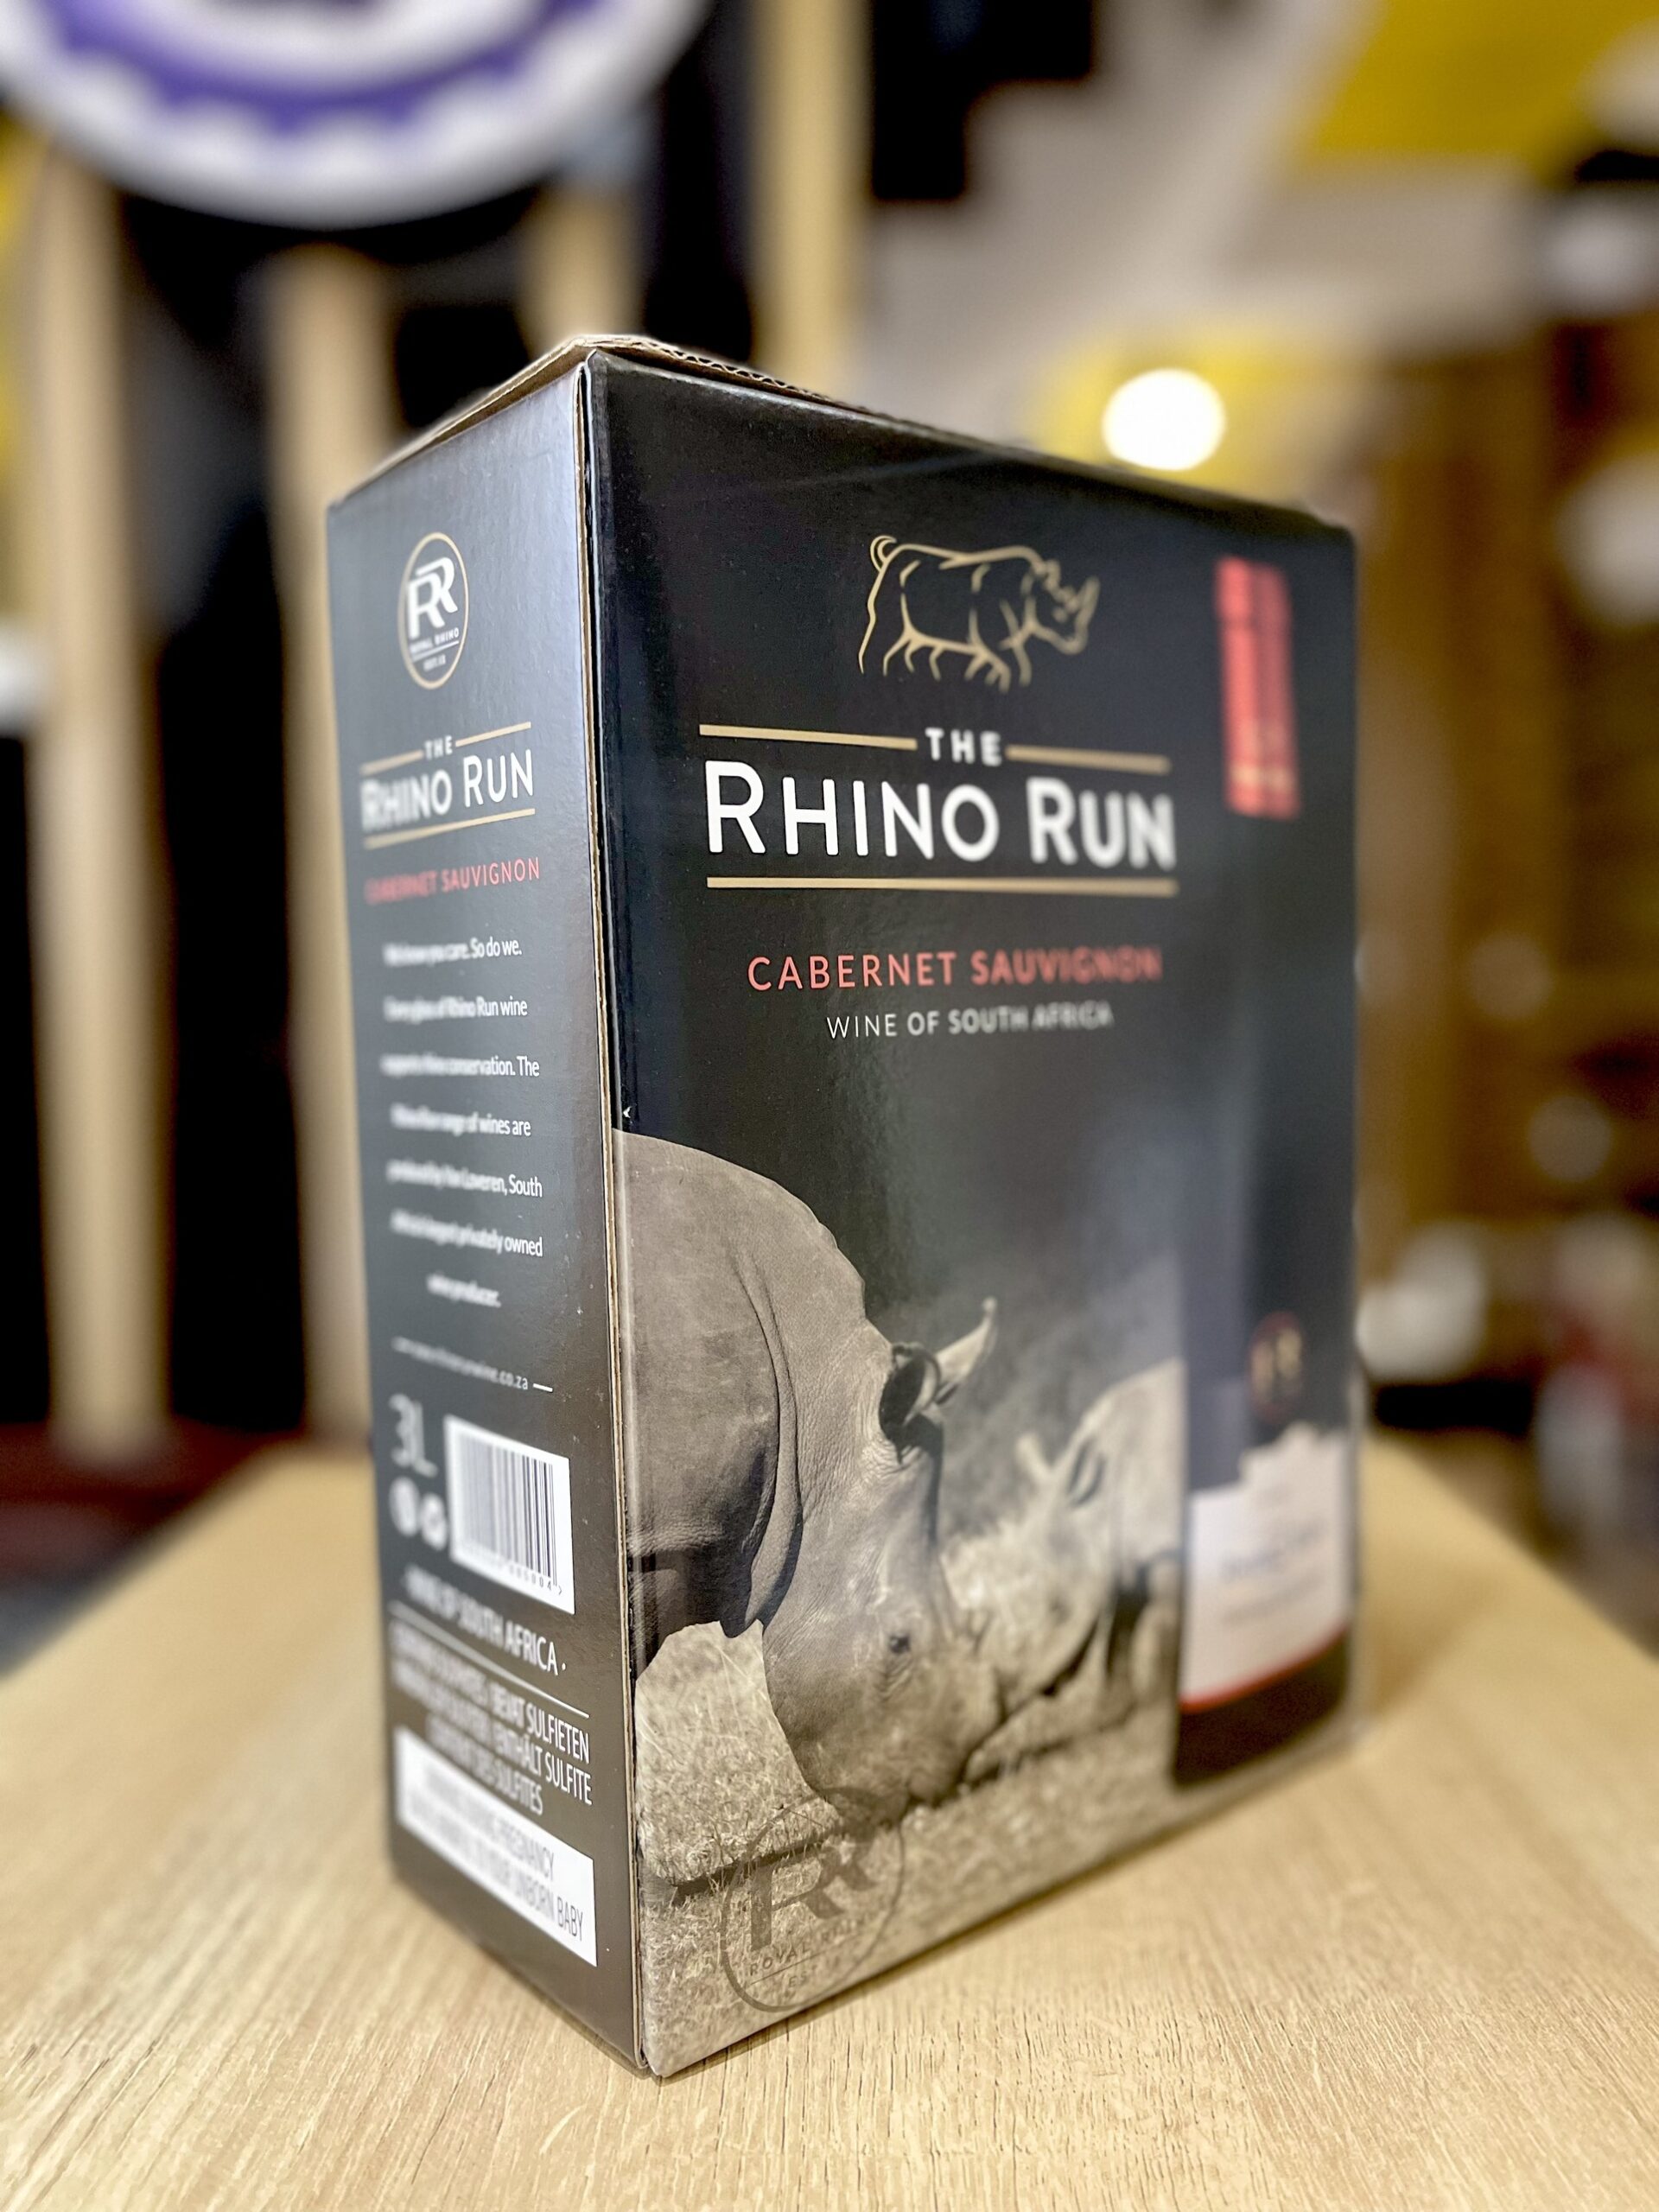 Vang bịch The Rhino Run